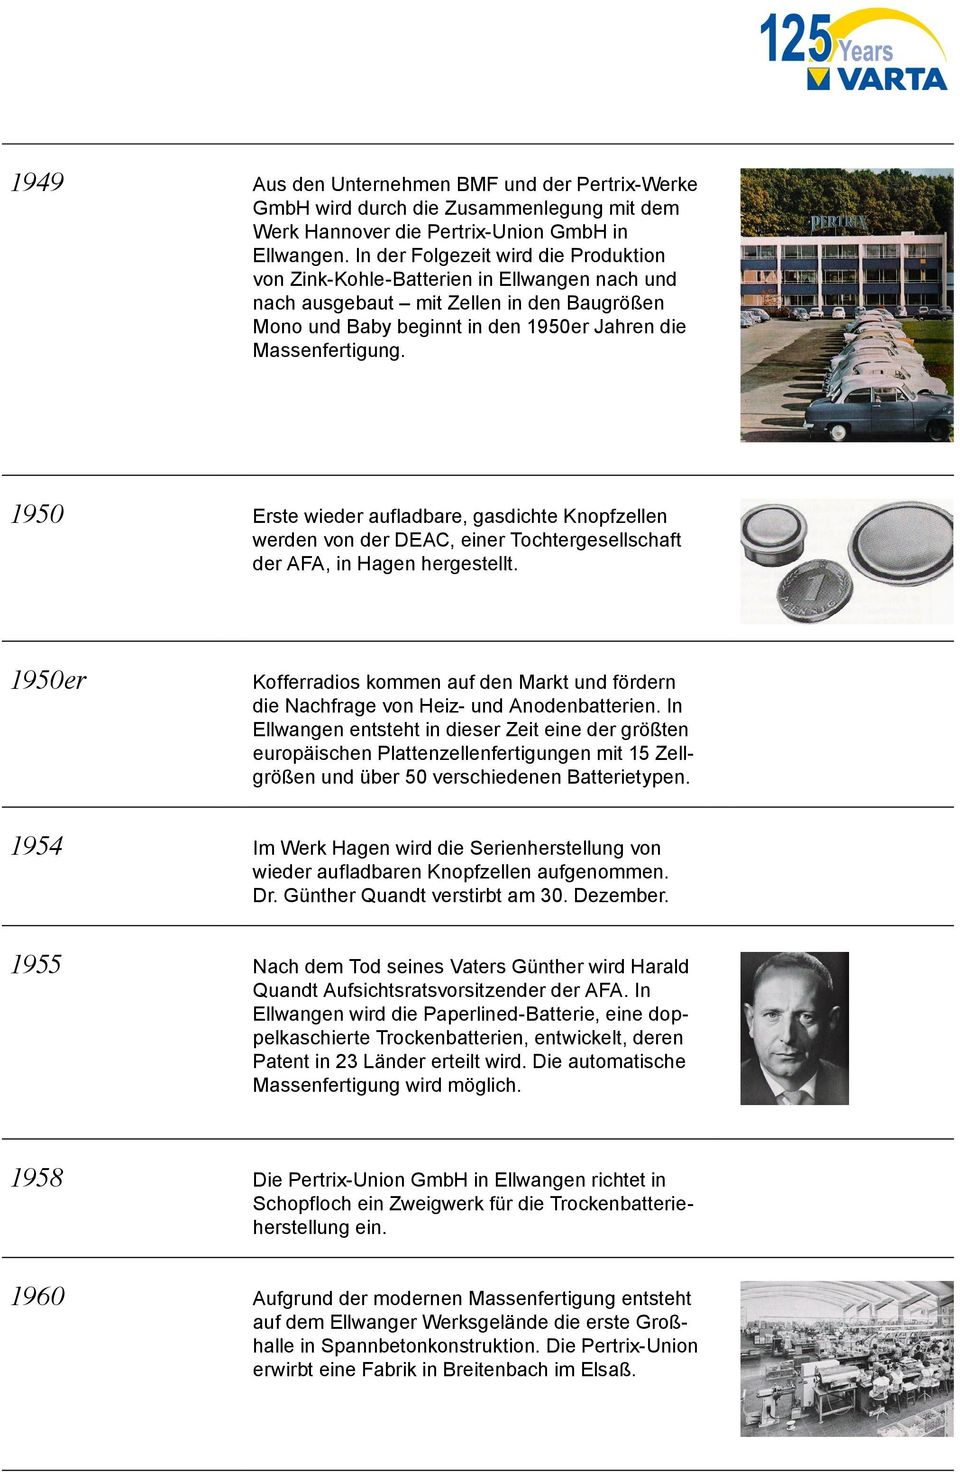 1950 Erste wieder aufladbare, gasdichte Knopfzellen werden von der DEAC, einer Tochtergesellschaft der AFA, in Hagen hergestellt.